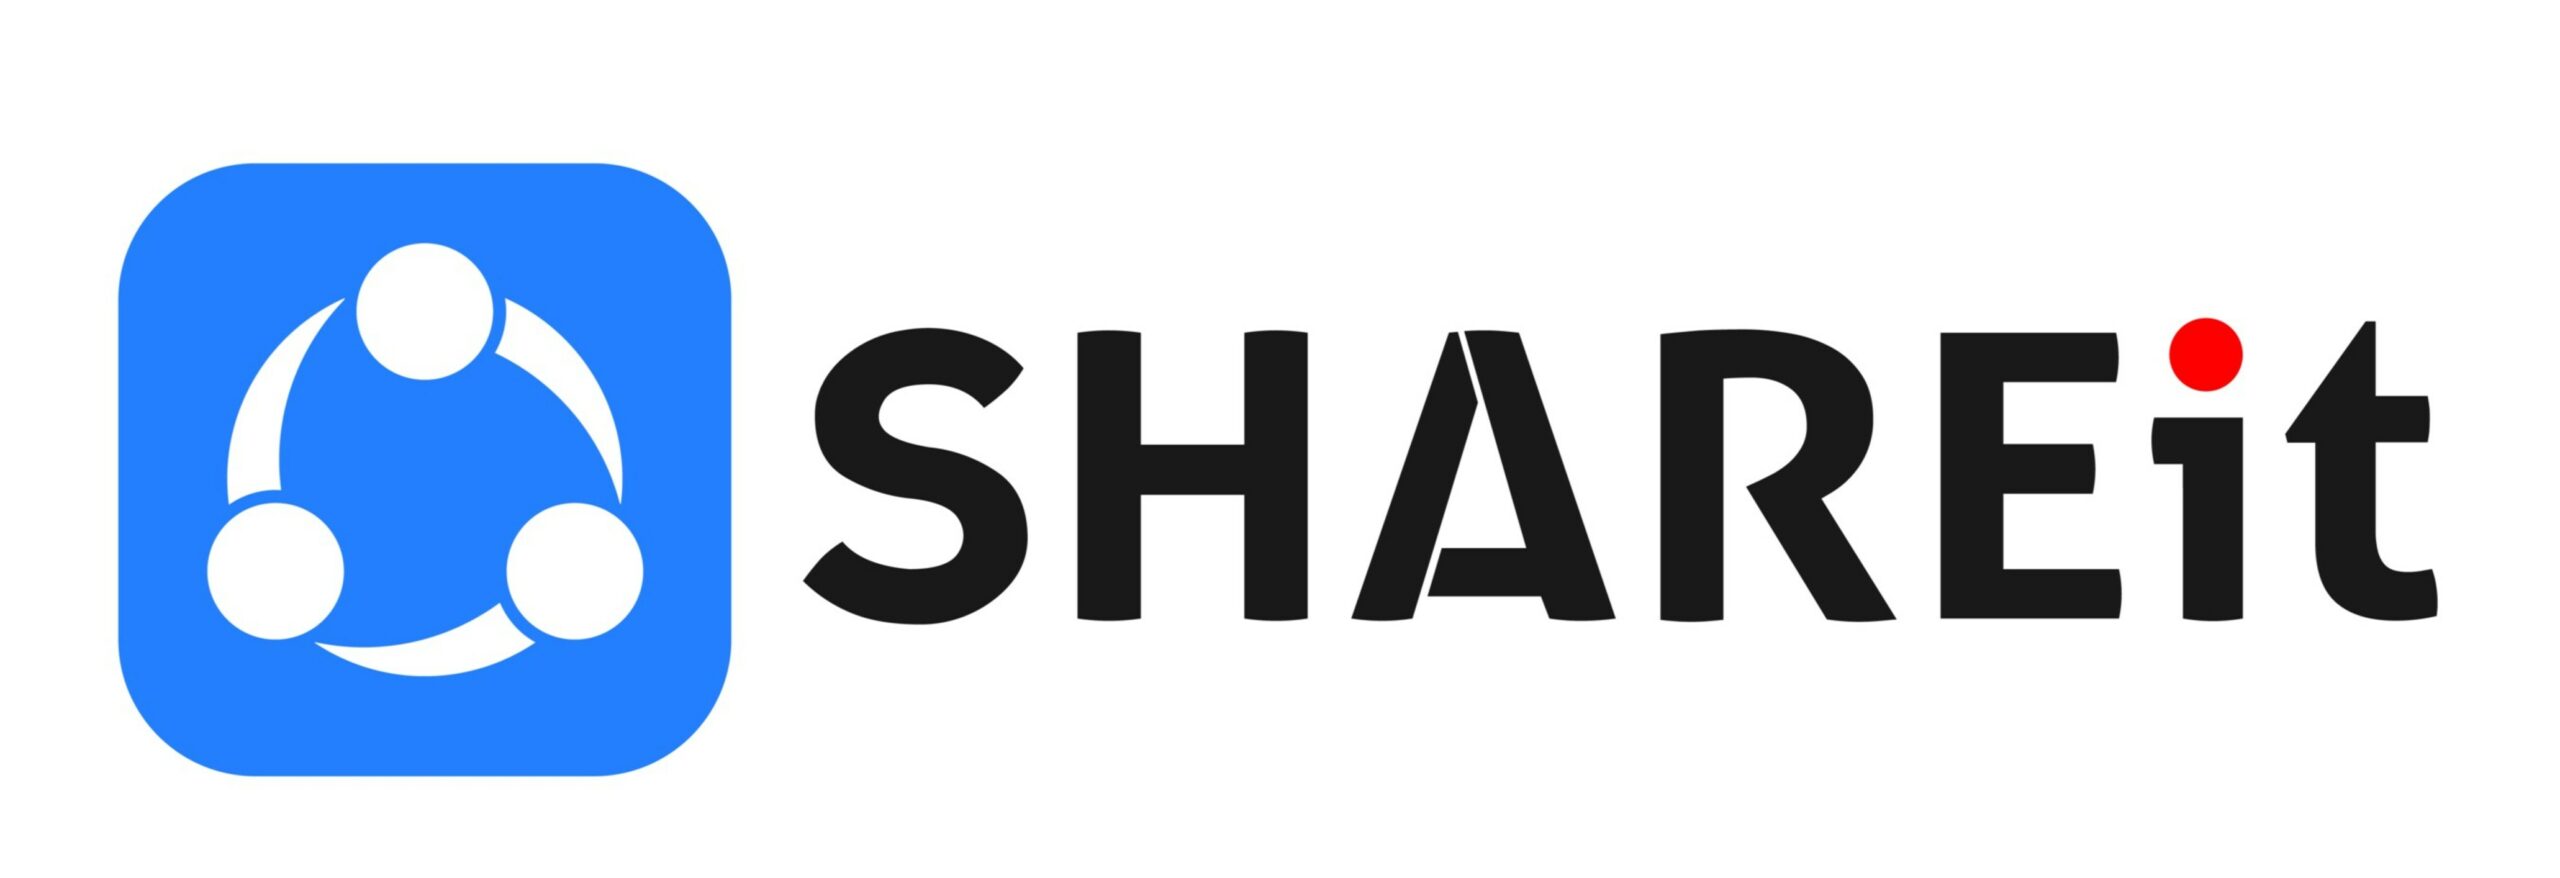 transferir documentos o archivos con Shareit